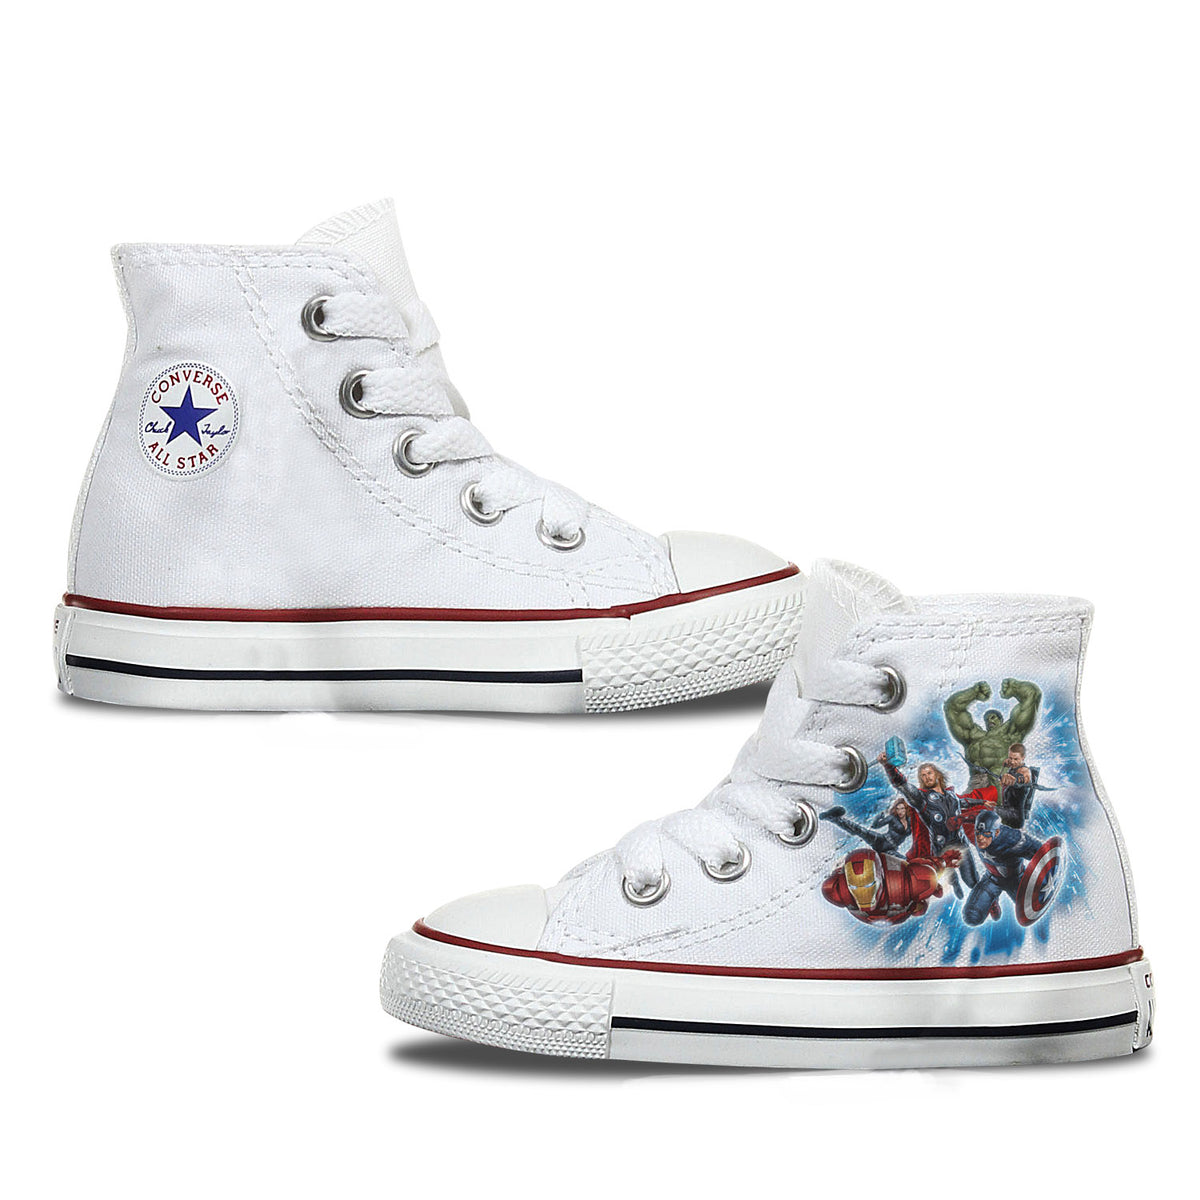 Avengers Custom Converse